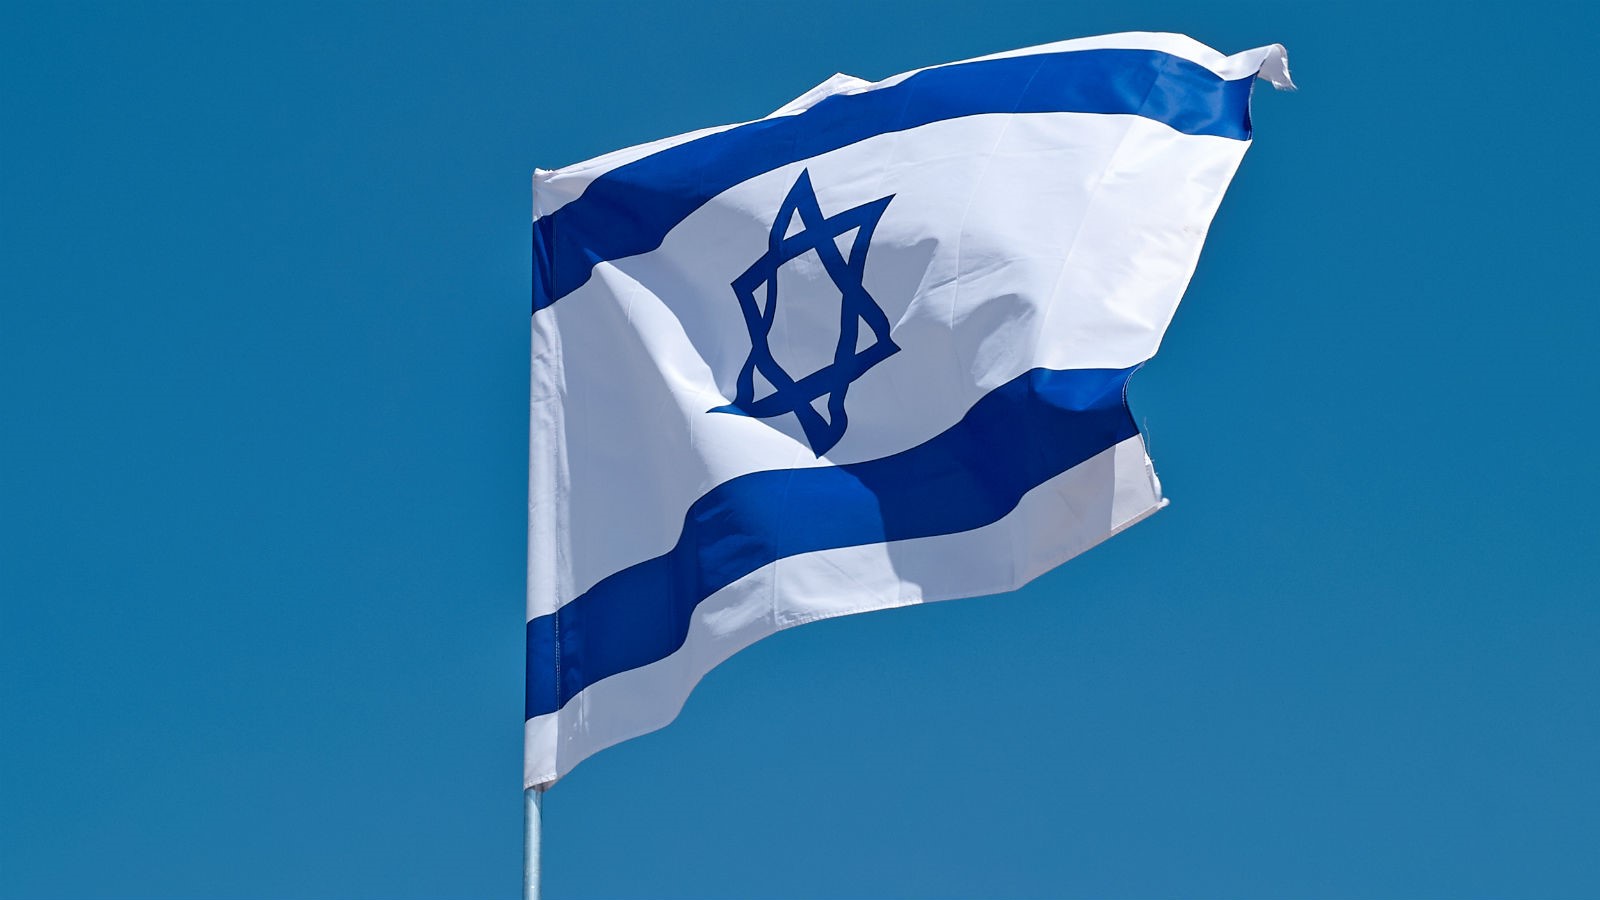 Denna gång lanserar ARK en ny ETF som erbjuder exponering mot israeliska teknologiföretag. Den nya börshandlade fonden heter ARK Israel Innovative Technology ETF (CBOE: IZRL)